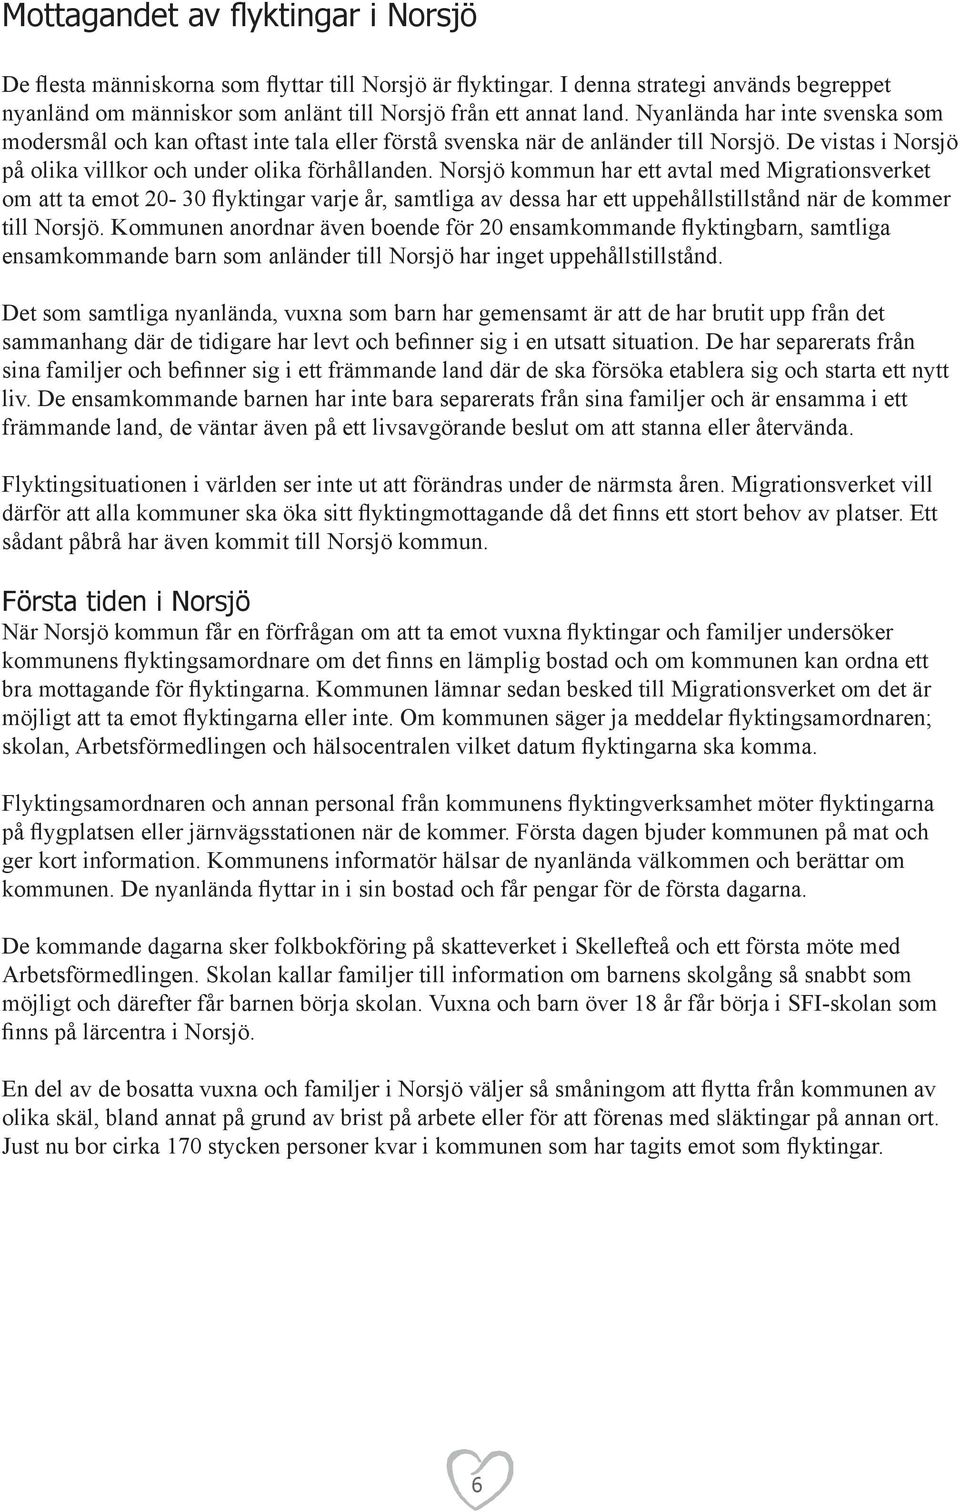 Norsjö kommun har ett avtal med Migrationsverket om att ta emot 20-30 flyktingar varje år, samtliga av dessa har ett uppehållstillstånd när de kommer till Norsjö.